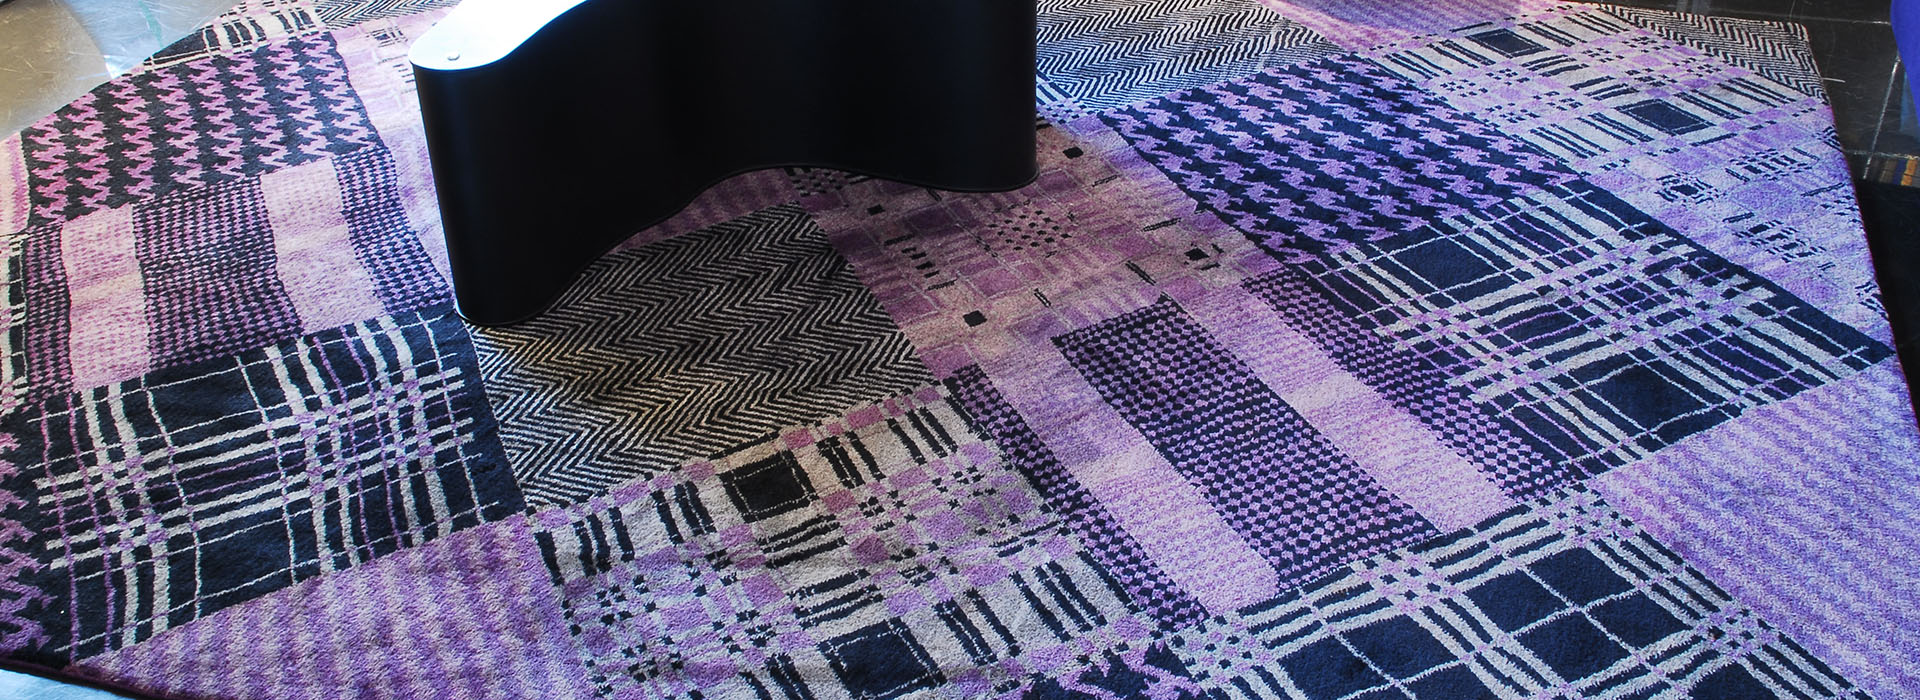 Texturierte Patchwork-Teppich mit abstrakten Mustern in verschiedenen Schattierungen von Lila, Schwarz und Weiß mit einer Ecke, die von einem dunklen Gegenstand überlappt wird.